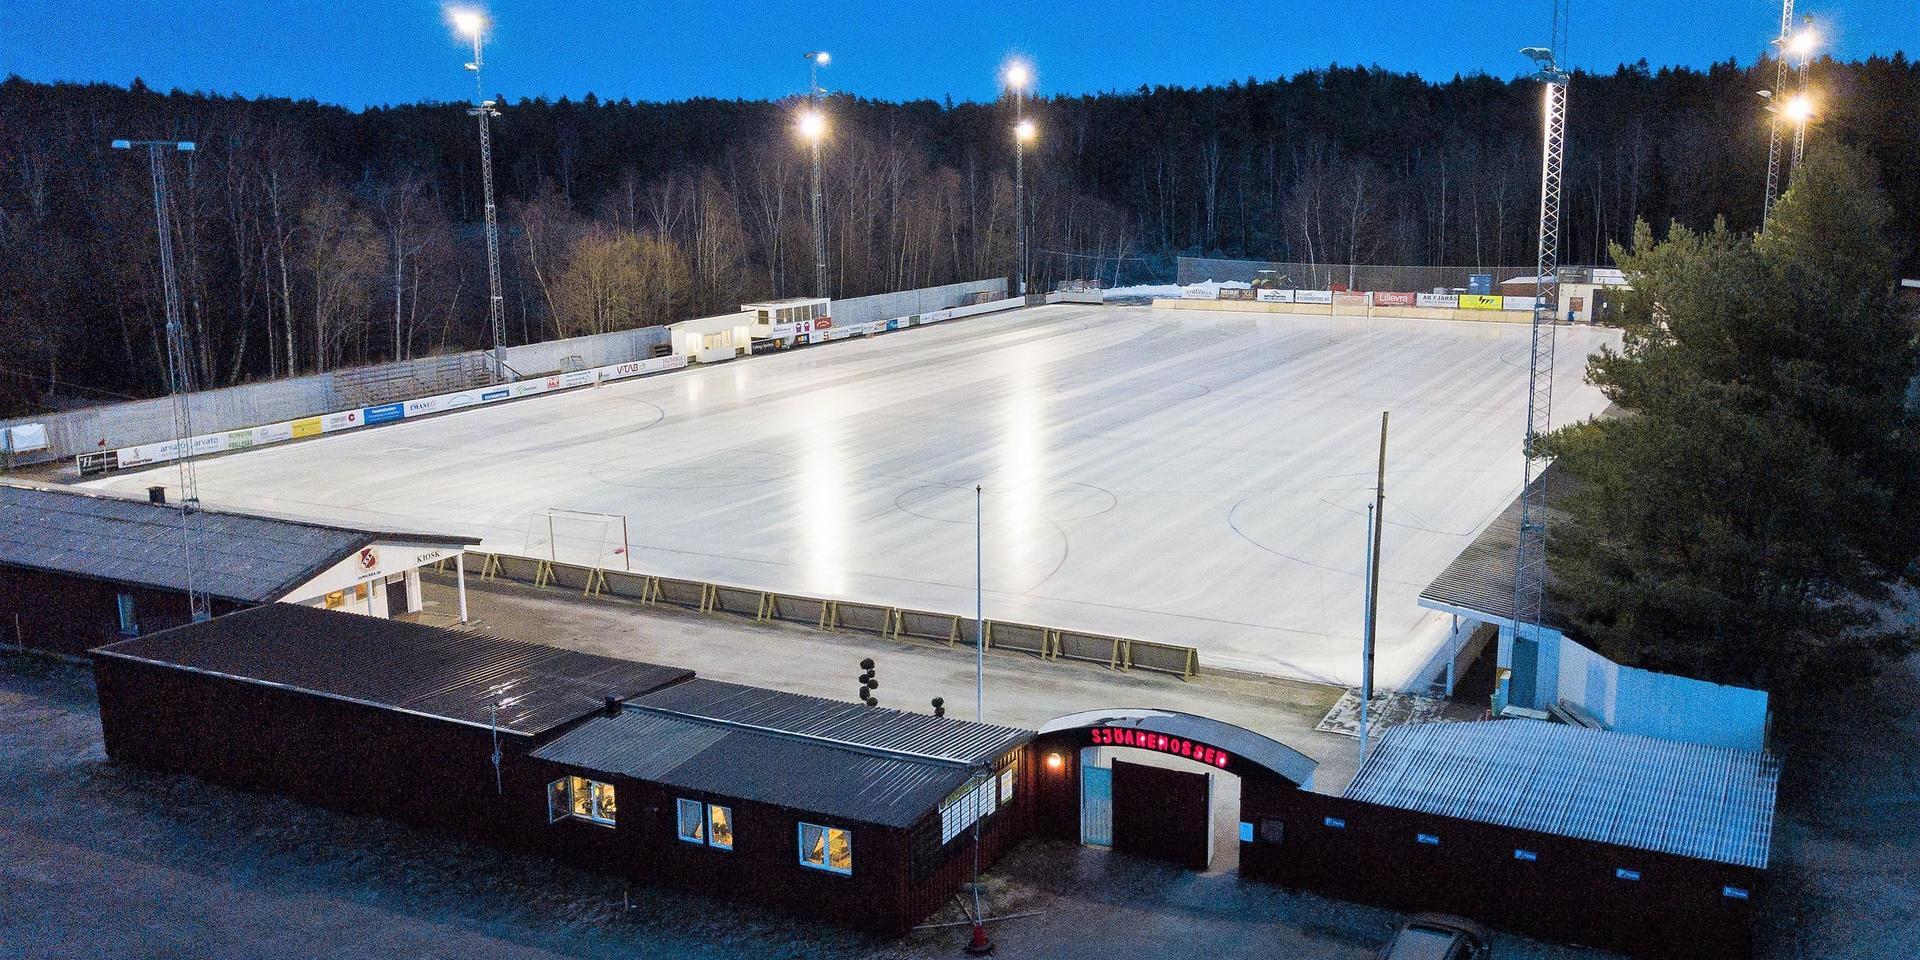 Sjöaremossens is blev klar i helgen och hemmapremiär förväntas kunna spelas på onsdag.